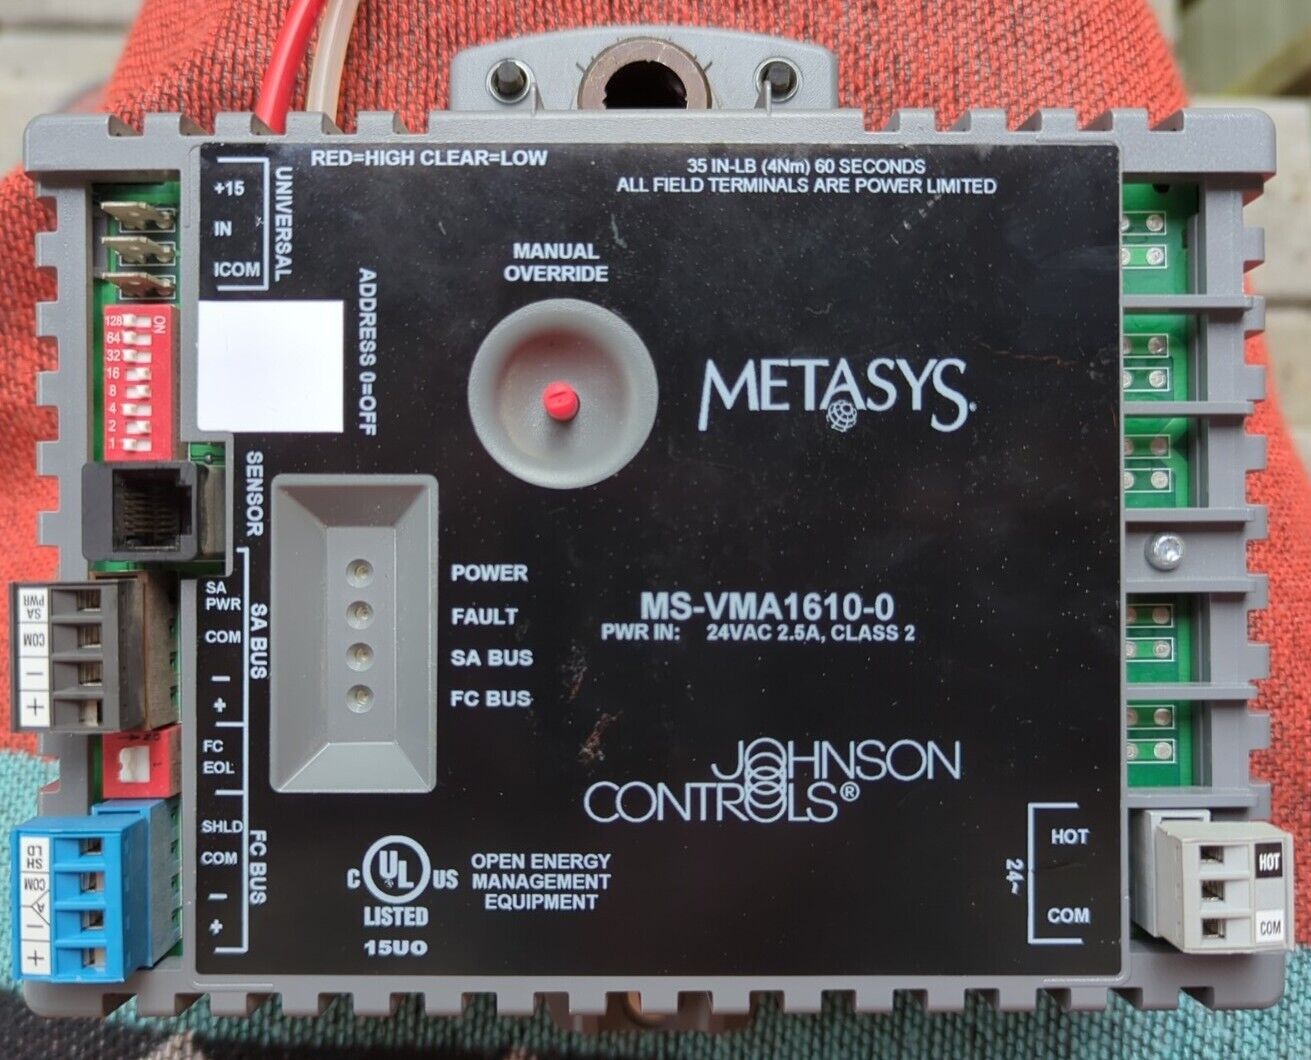 Johnson Controls Metasys MS-VMA 1610-0 Variable Air Controller 